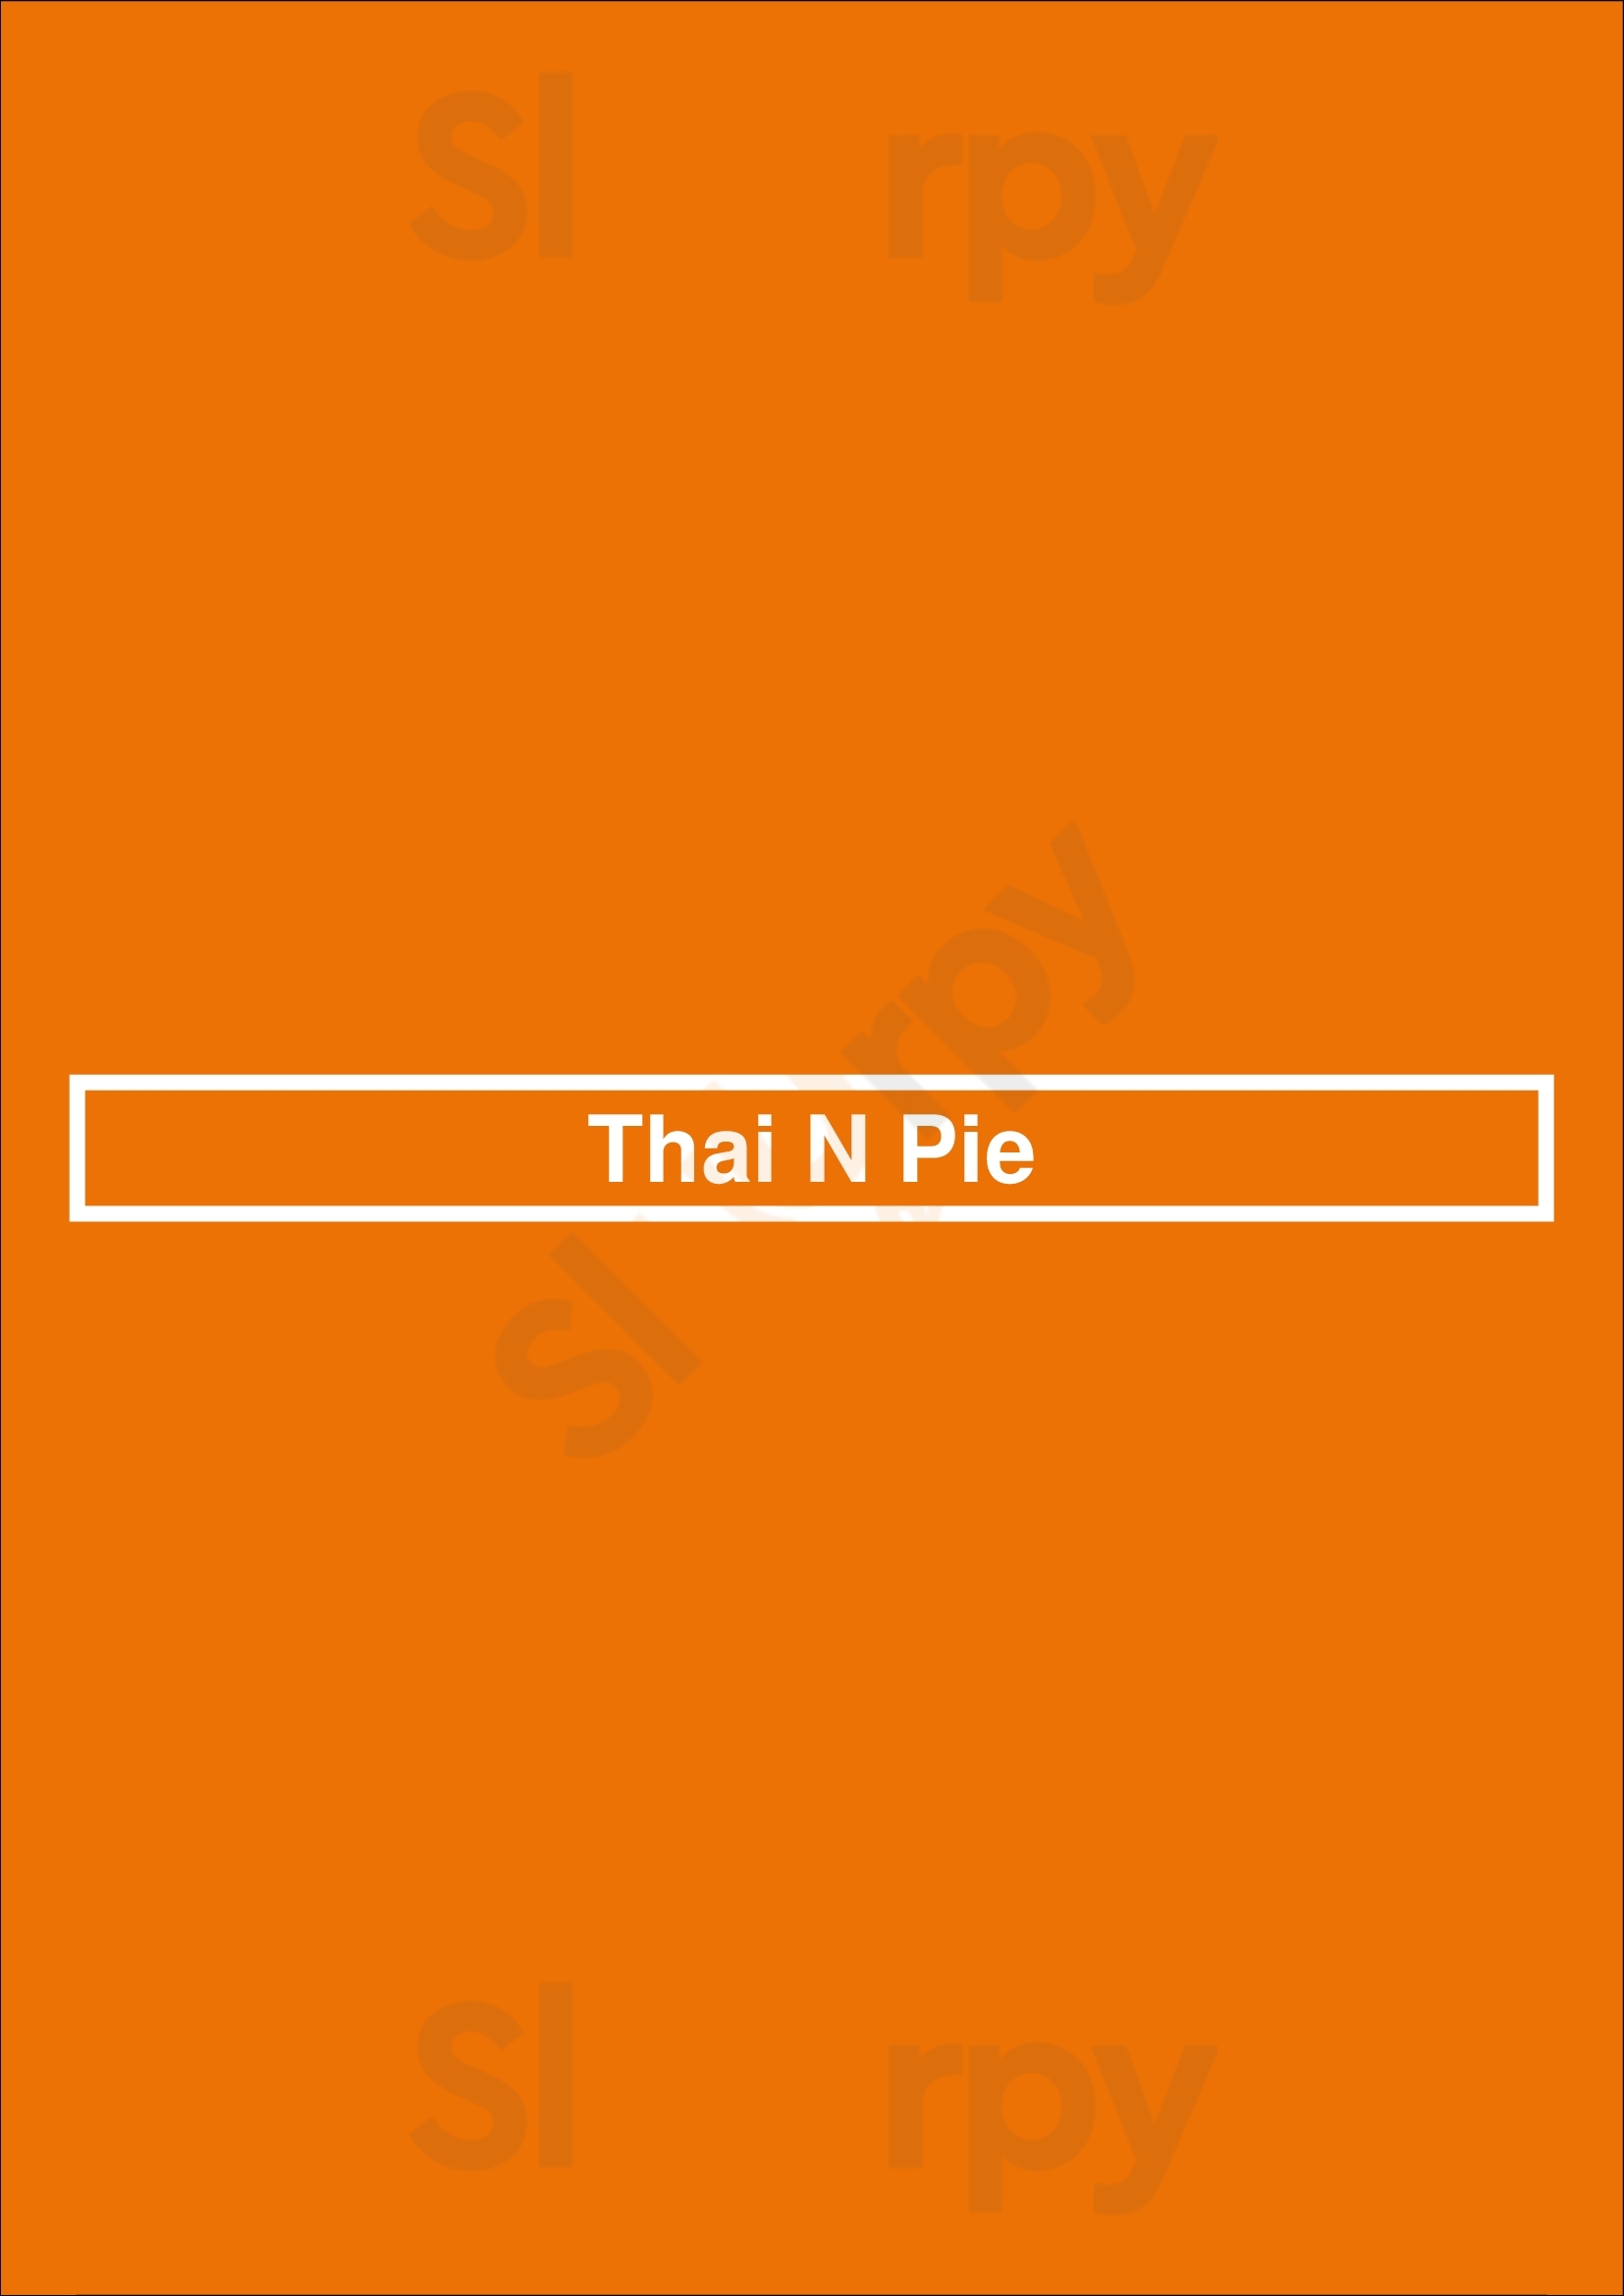 Thai N Pie London Menu - 1